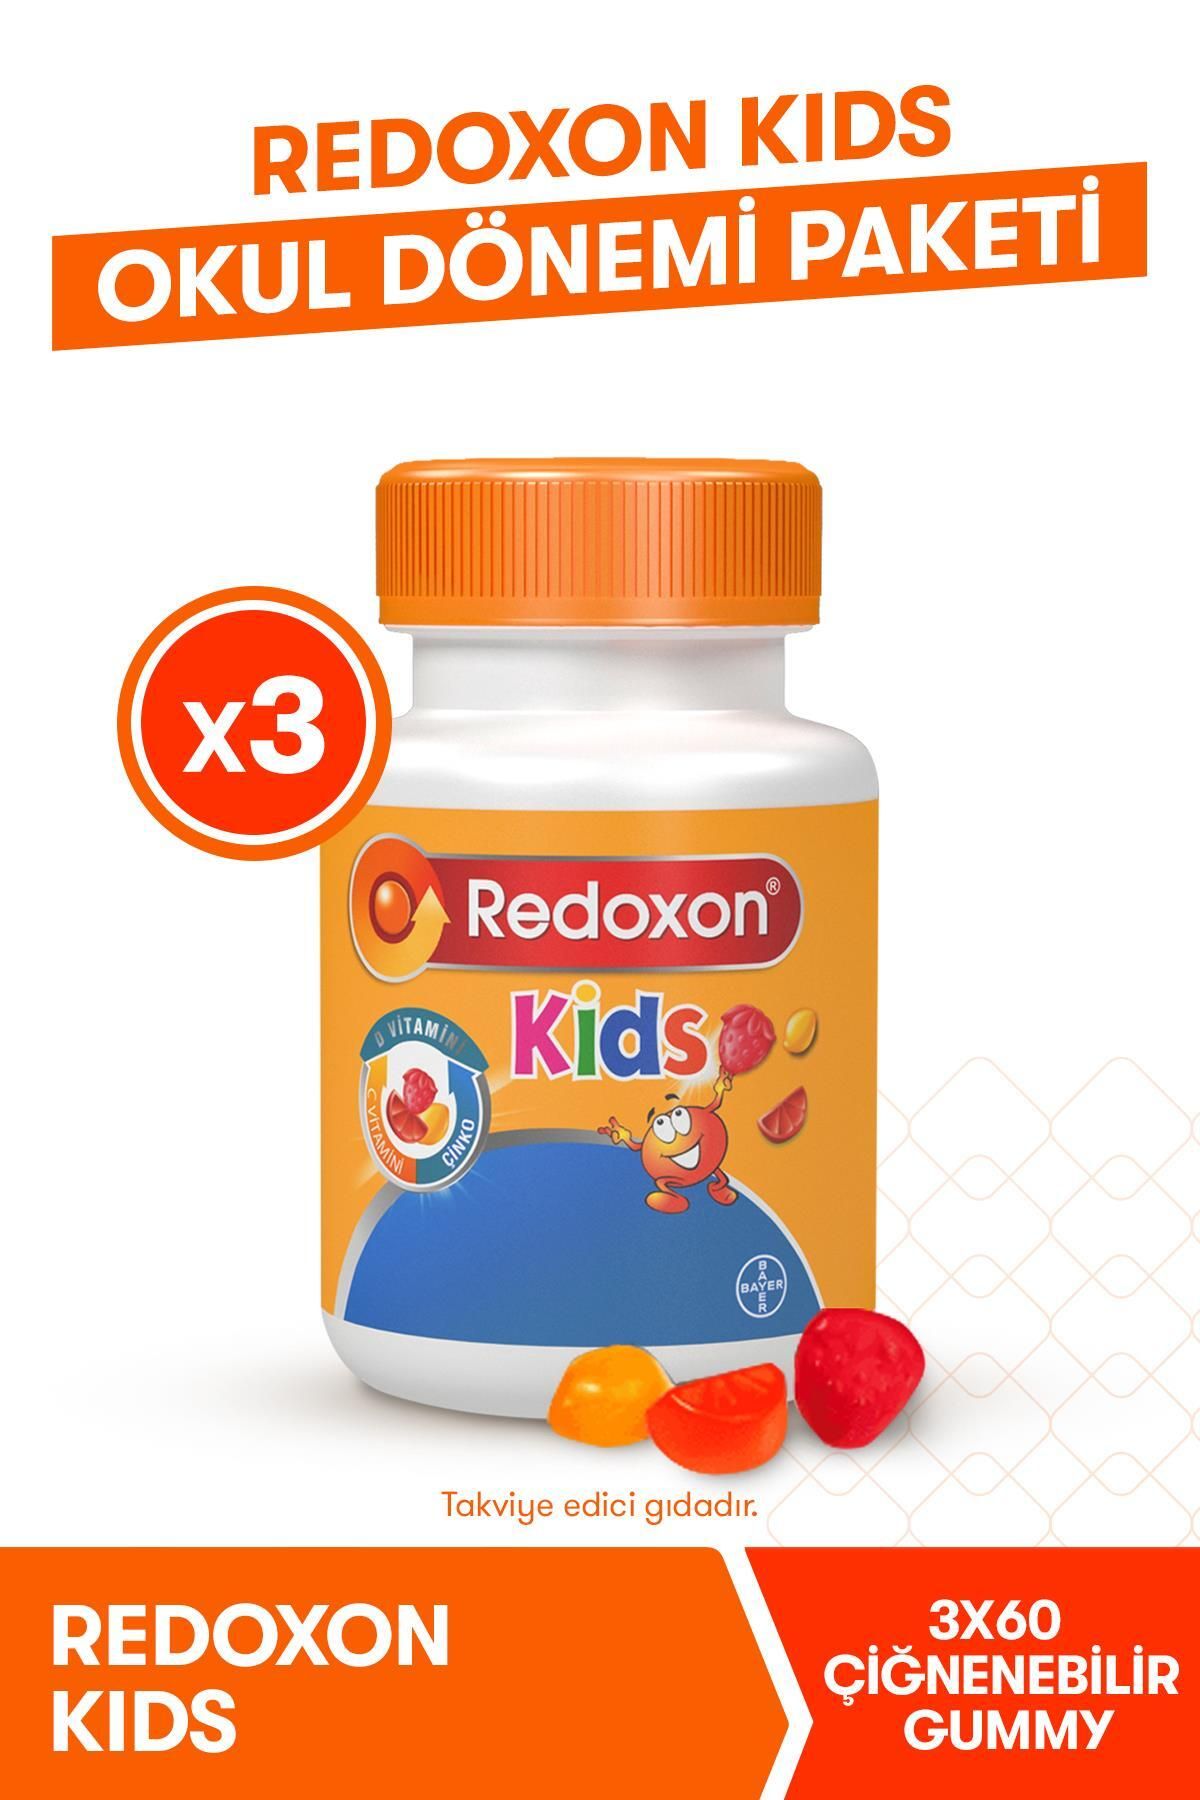 Redoxon Kids 3lü Okul Dönemi Paketi I Çocuklar Için C Vitamini, D Vitamini Ve Çinko Içeren Takviye